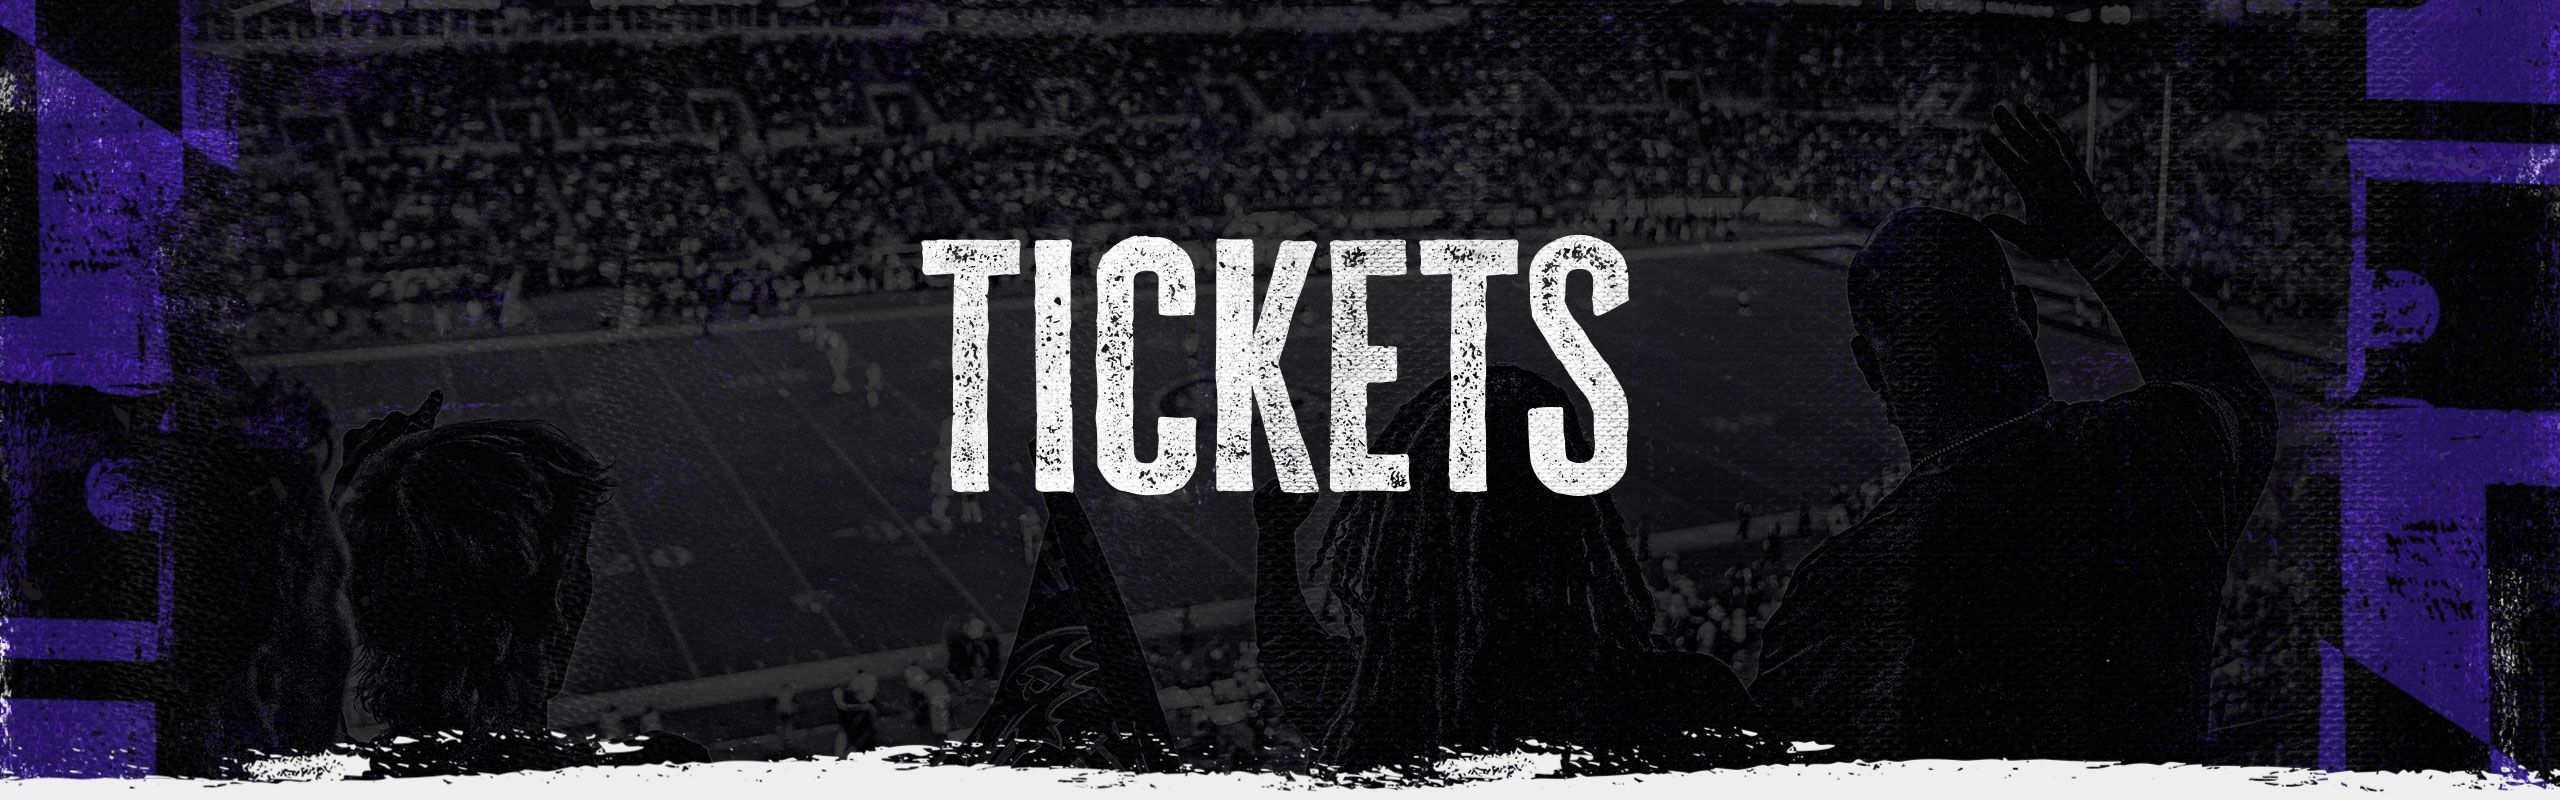 Baltimore Ravens Tickets, 2023 NFL Tickets & Schedule